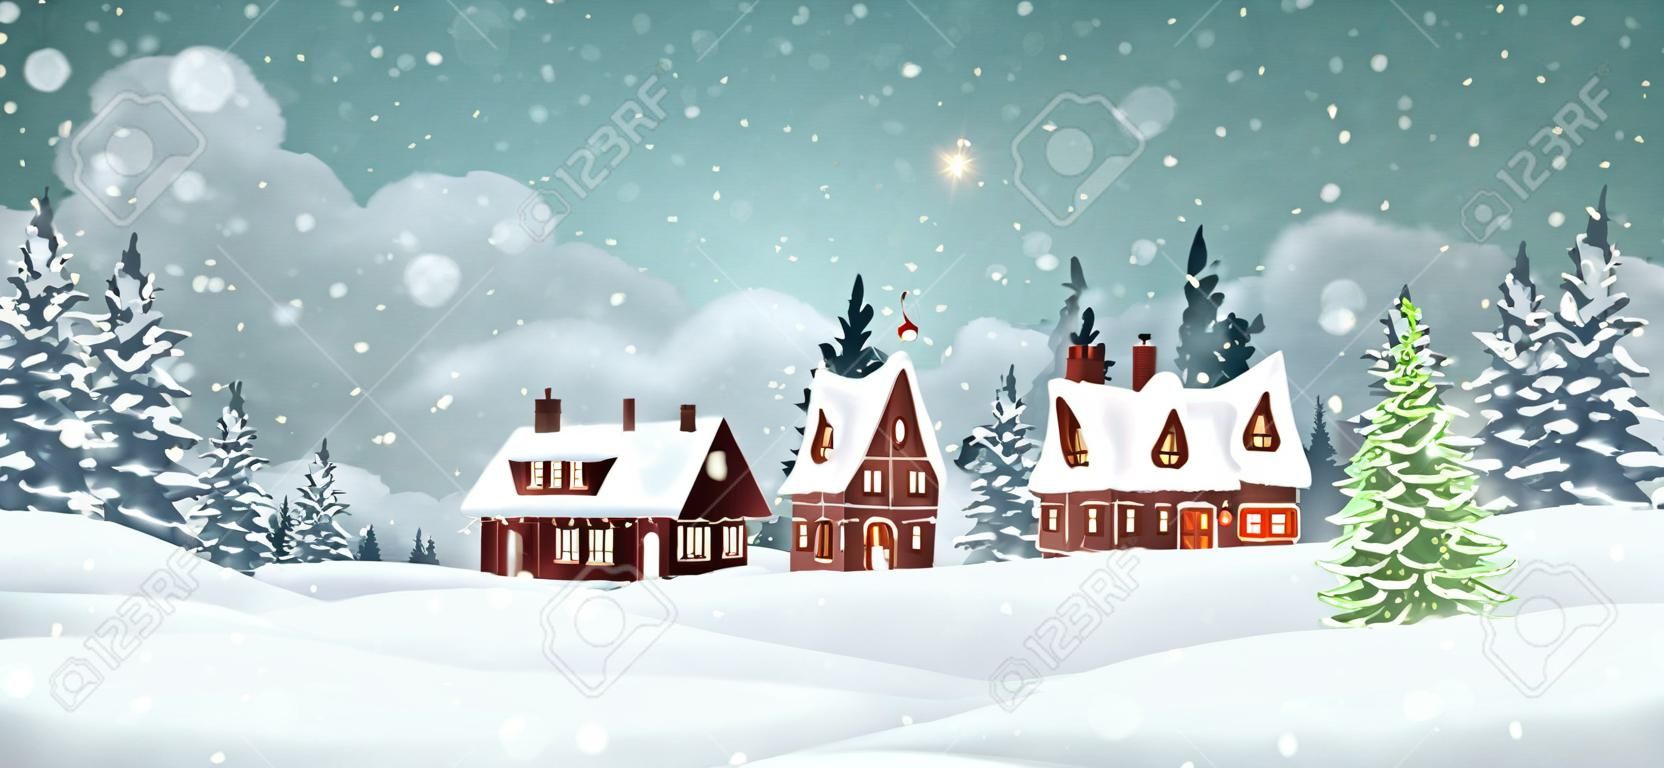 Kerstdorp huizen met winter pijnboom bos. Kerstvakantie vector illustratie